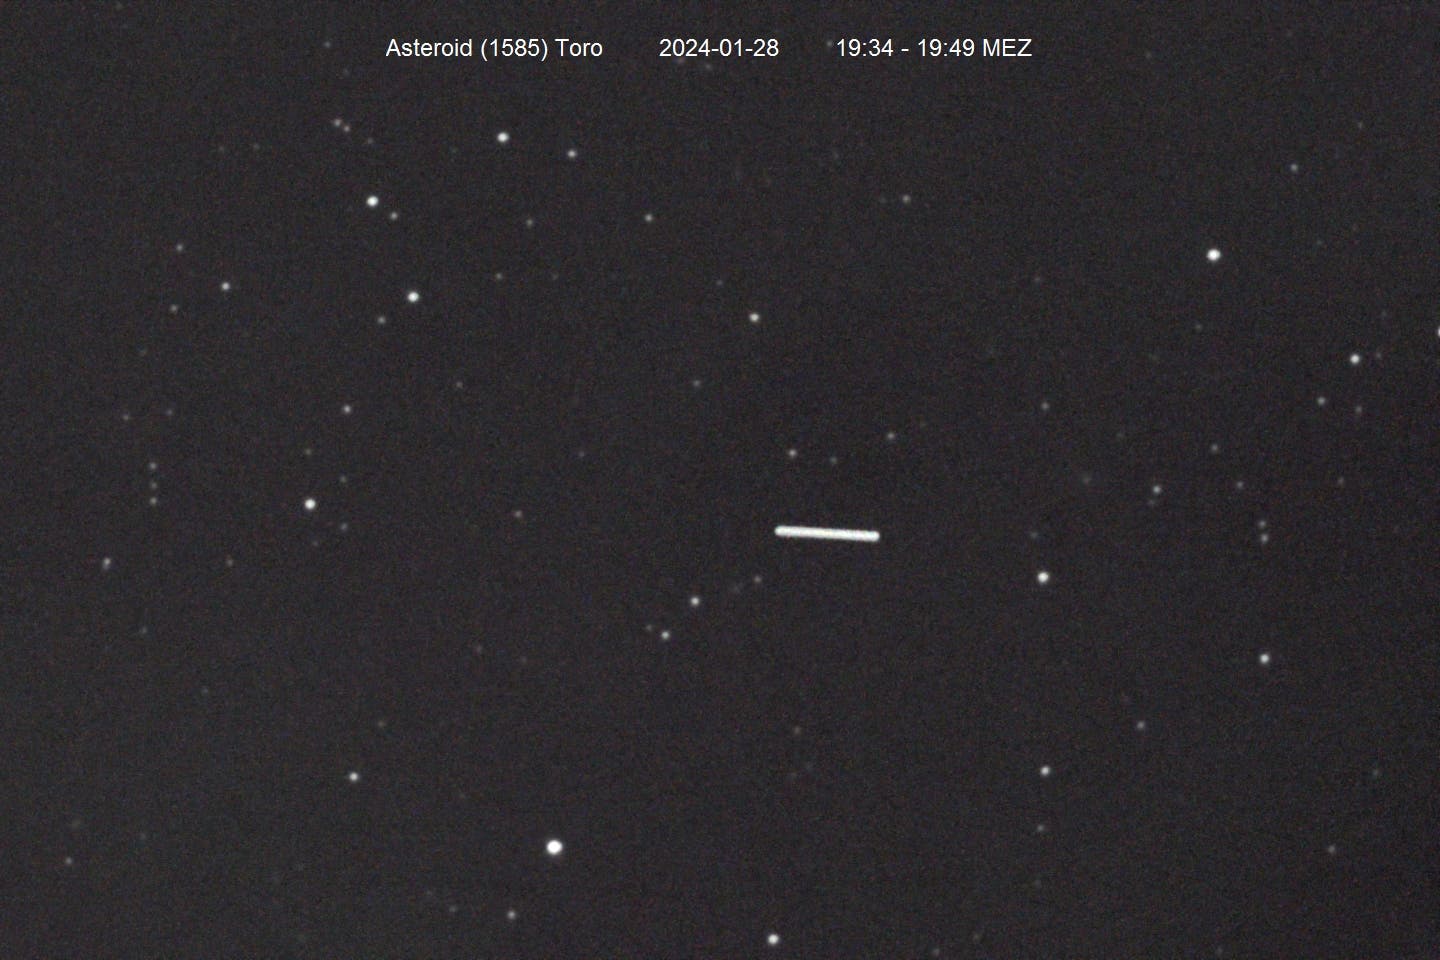 Asteroid (1685) Toro